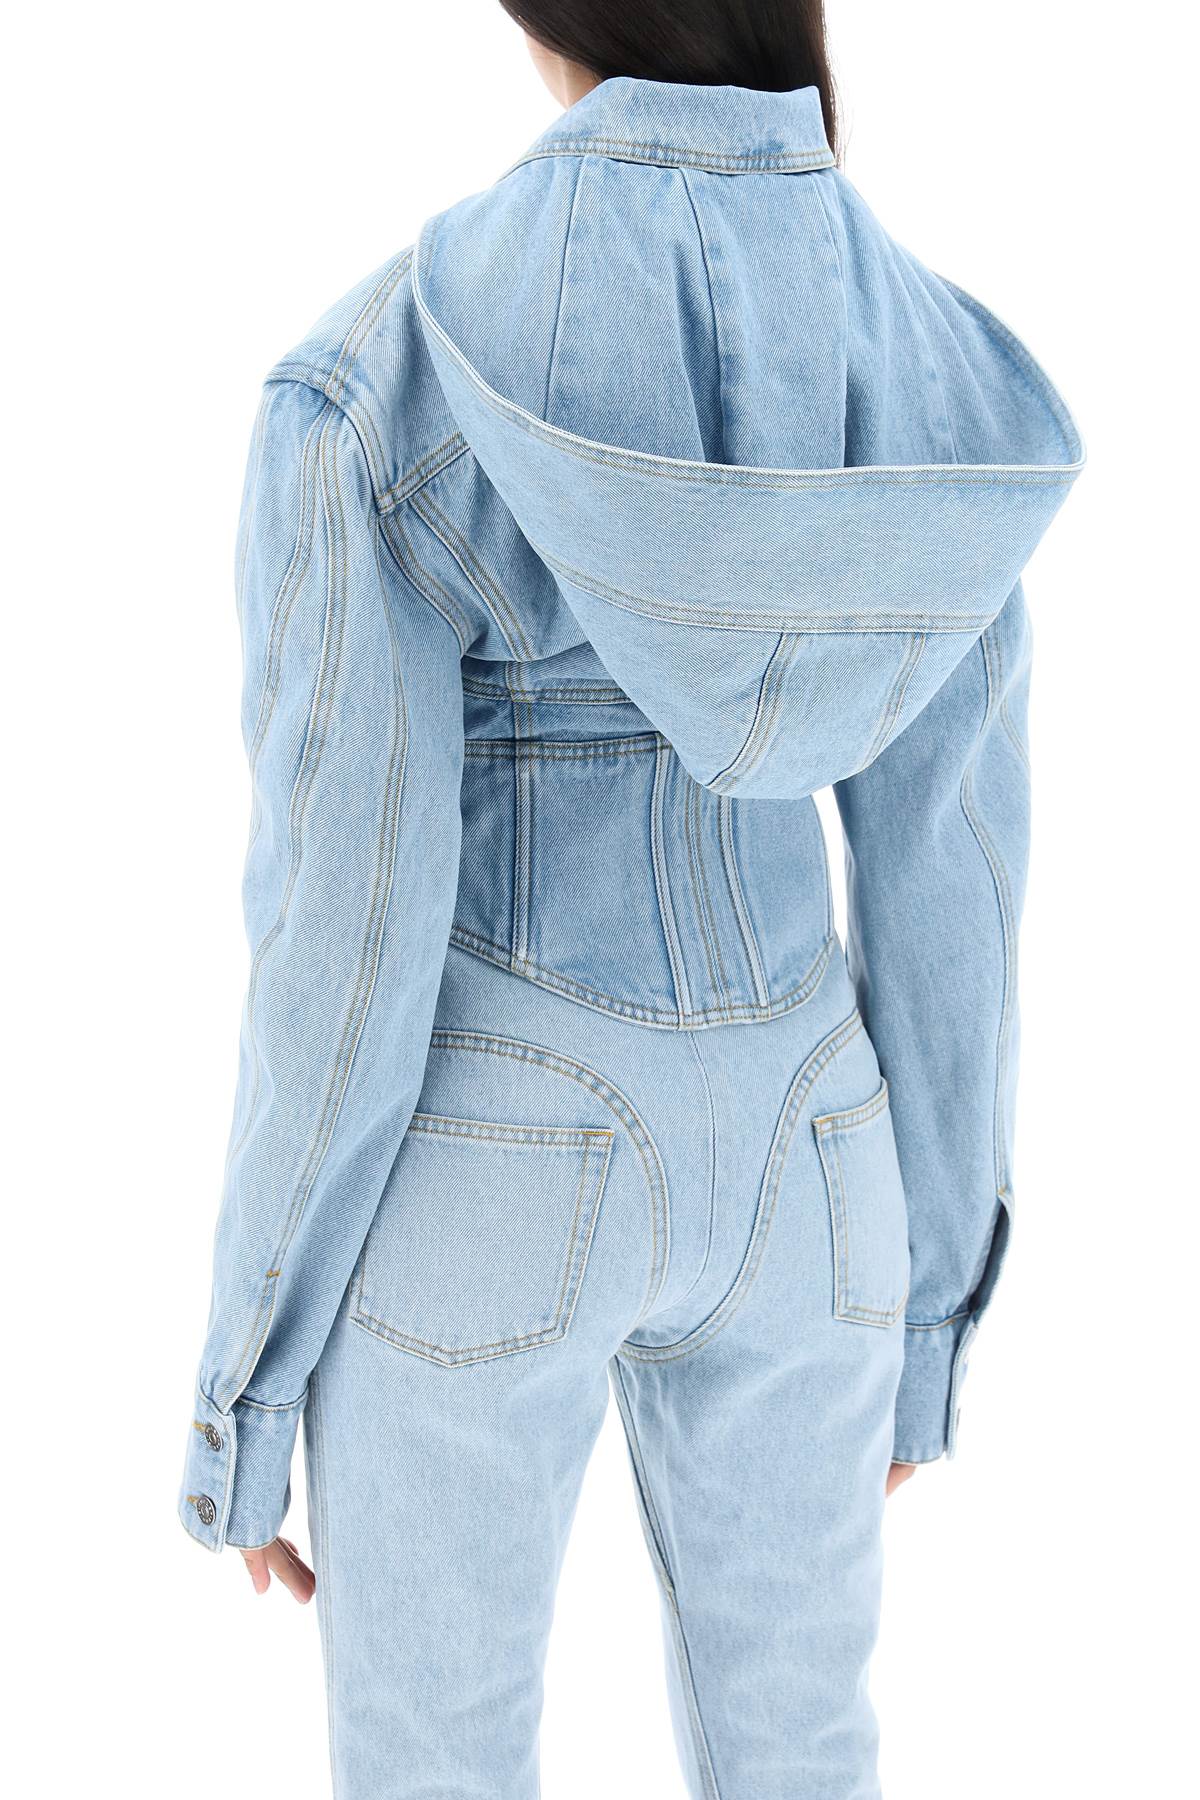 Shop Mugler Blue Corset Denim Jacket With Removable Hood For Women